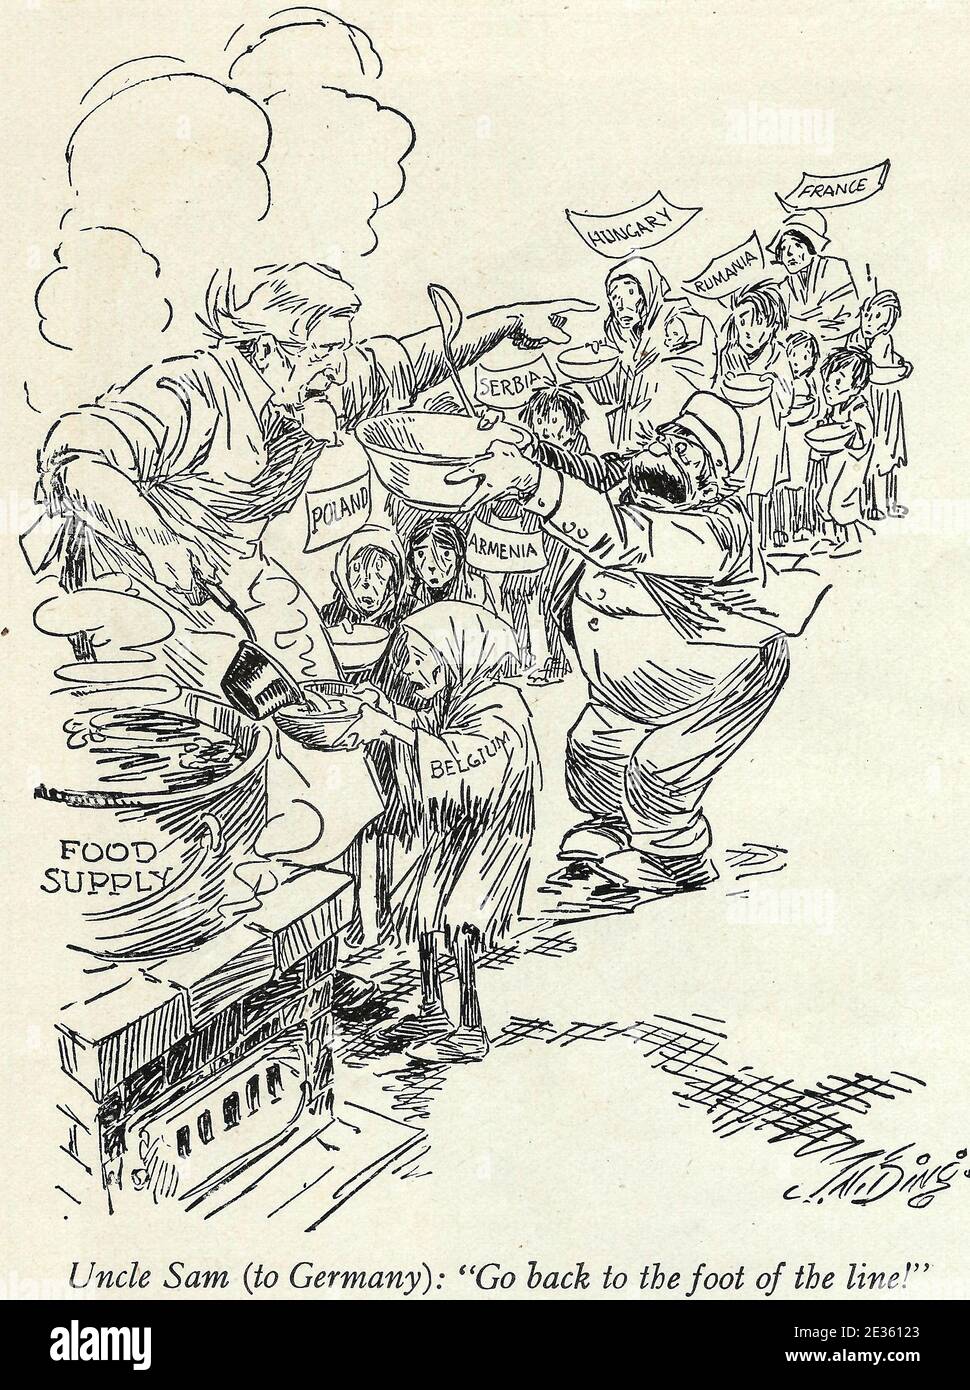 Oncle Sam (en Allemagne) - remonter au pied de la ligne. Une caricature politique à la suite de la première Guerre mondiale montrant l'Allemagne essayant de sauter la file d'attente pour l'aide alimentaire - 1919 Banque D'Images